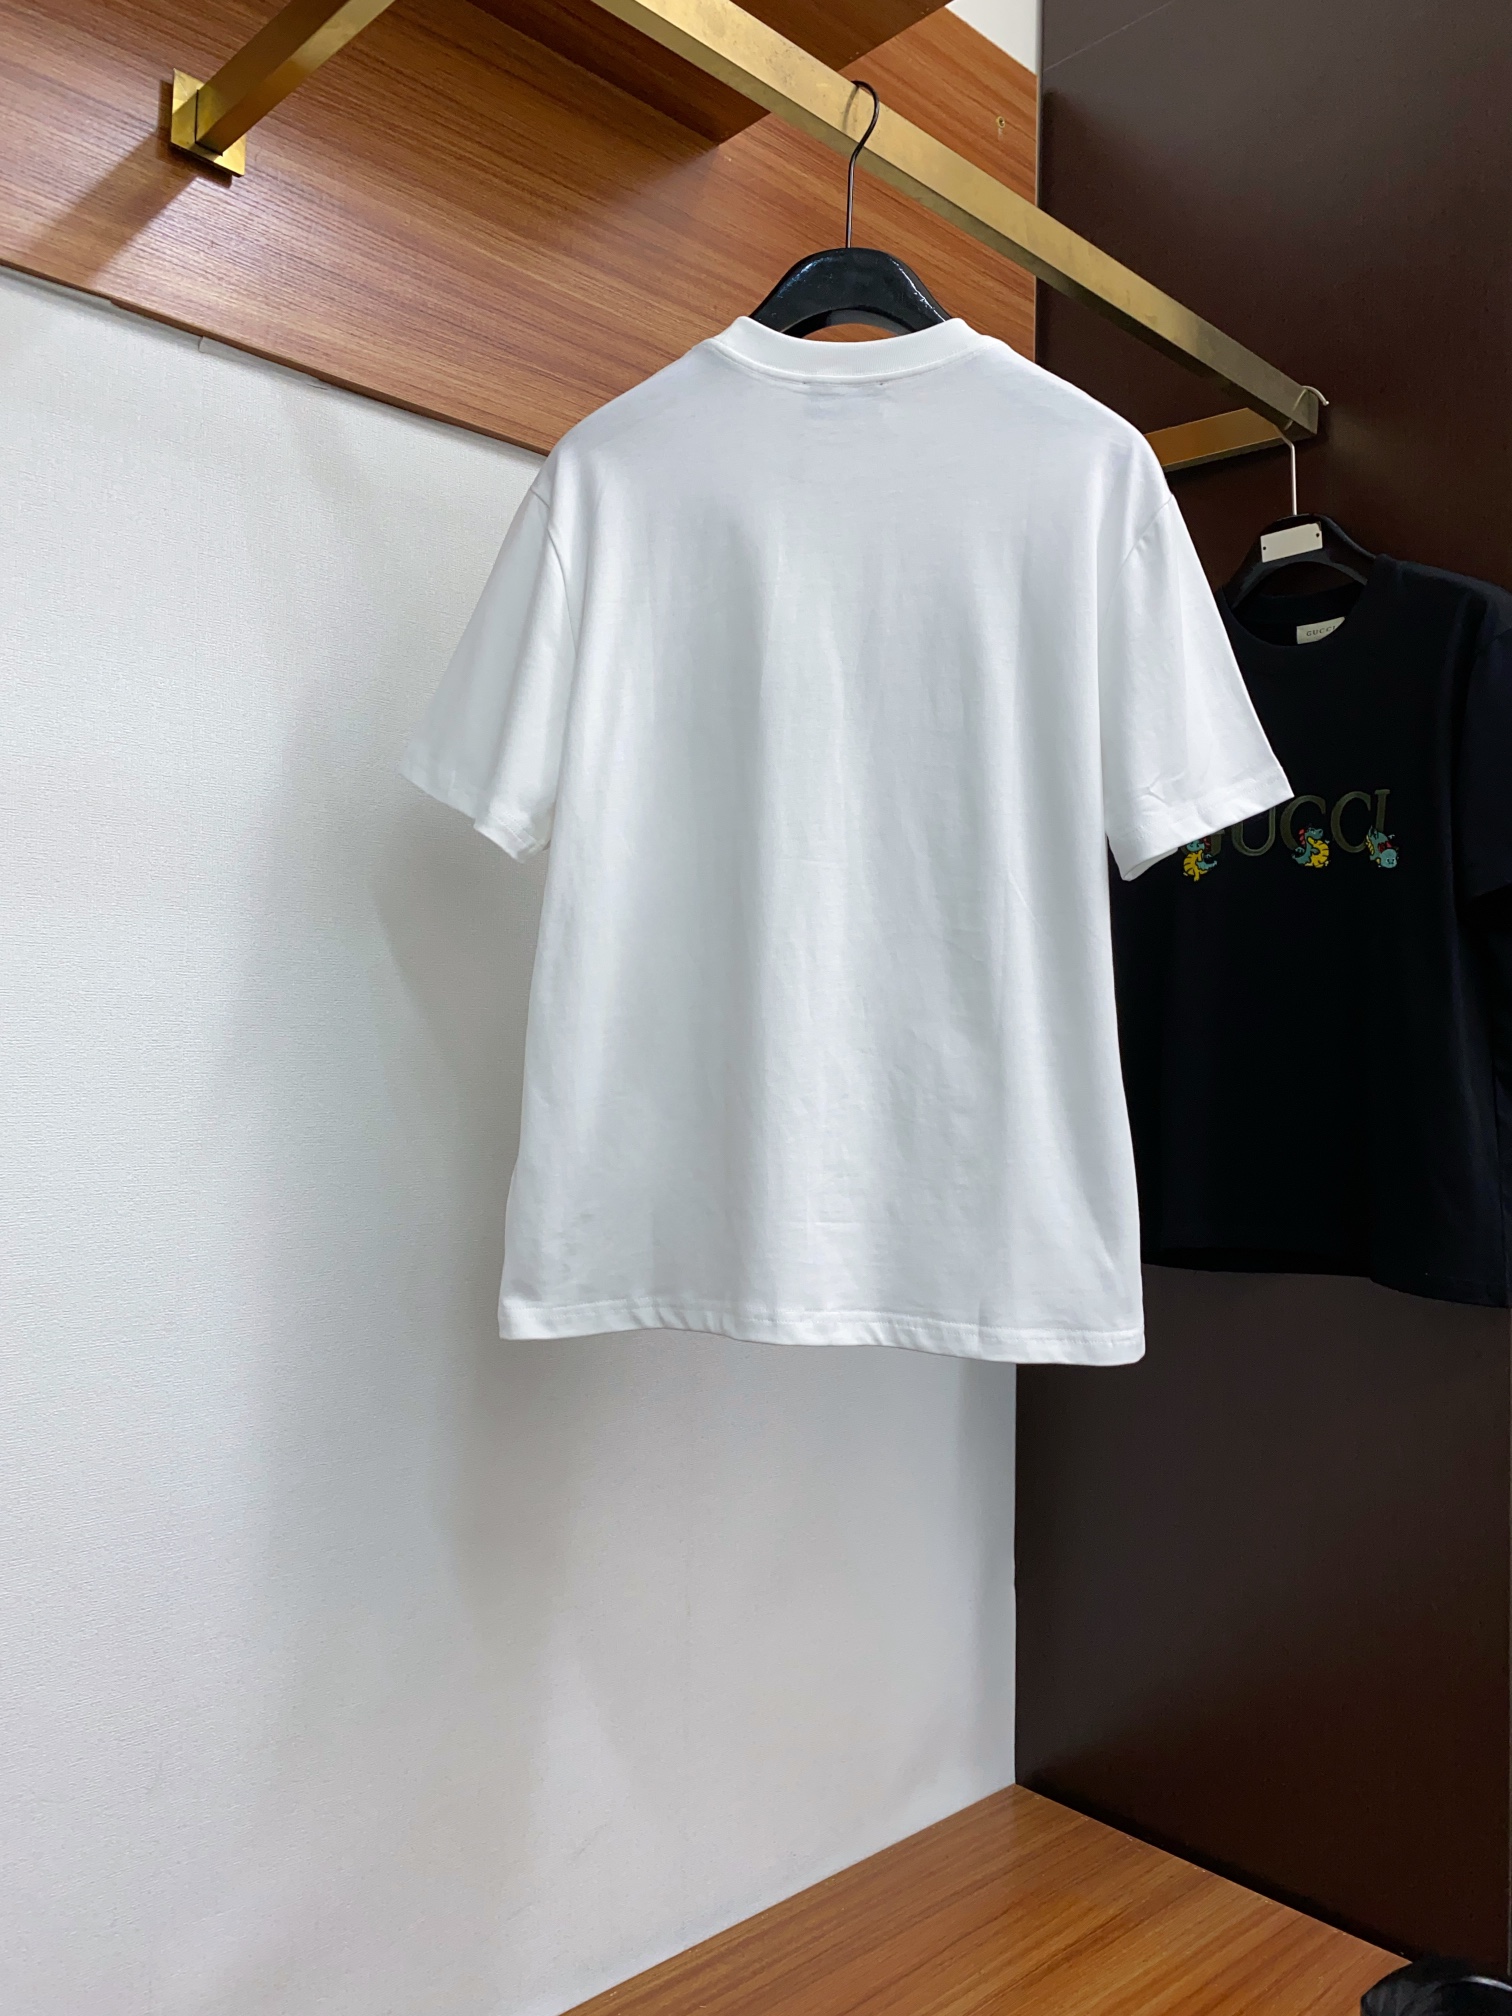 古奇修身版型M-3xL24春夏早春新款短袖T恤顶级制作工艺进口纯棉面料手感细腻每个字母饱满立体清晰,一眼